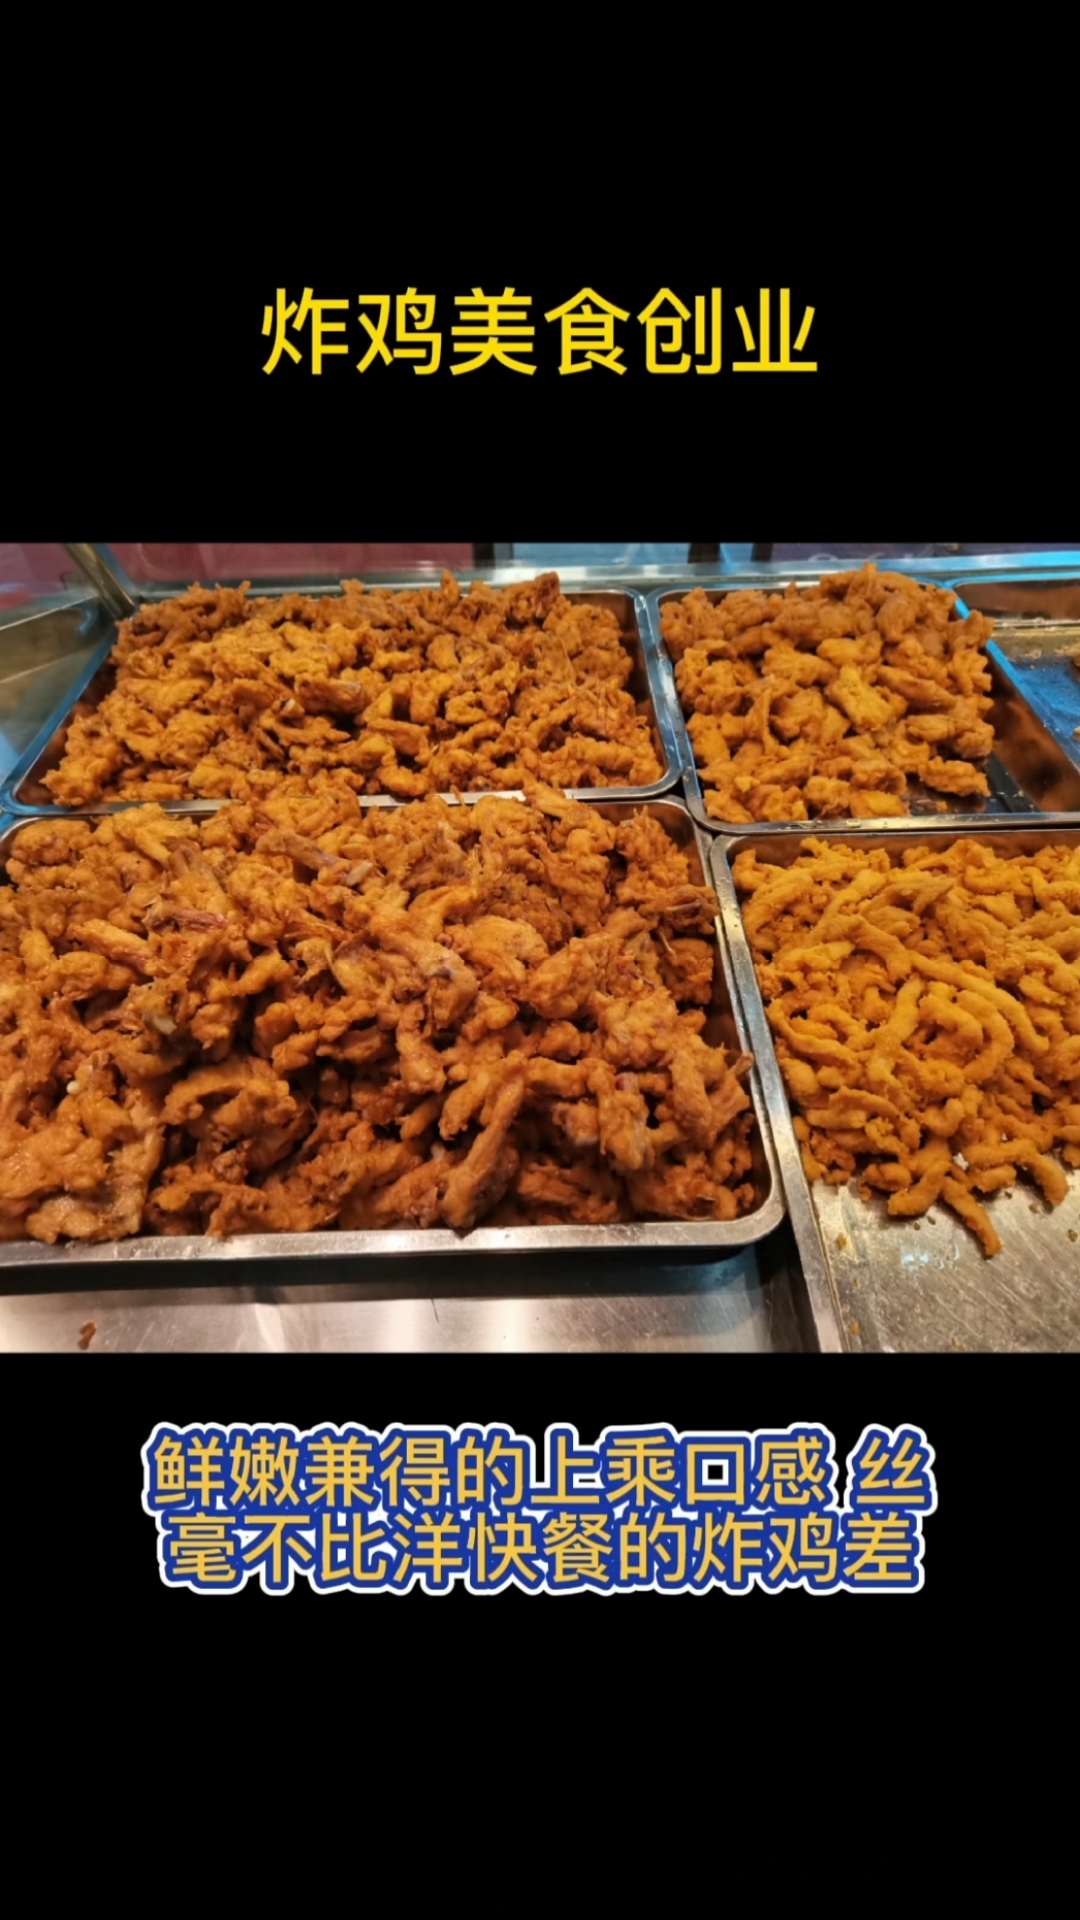 美食凯尚达炸鸡主营炸鸡系列海鲜系列品种多口味全靠品质立足市场靠